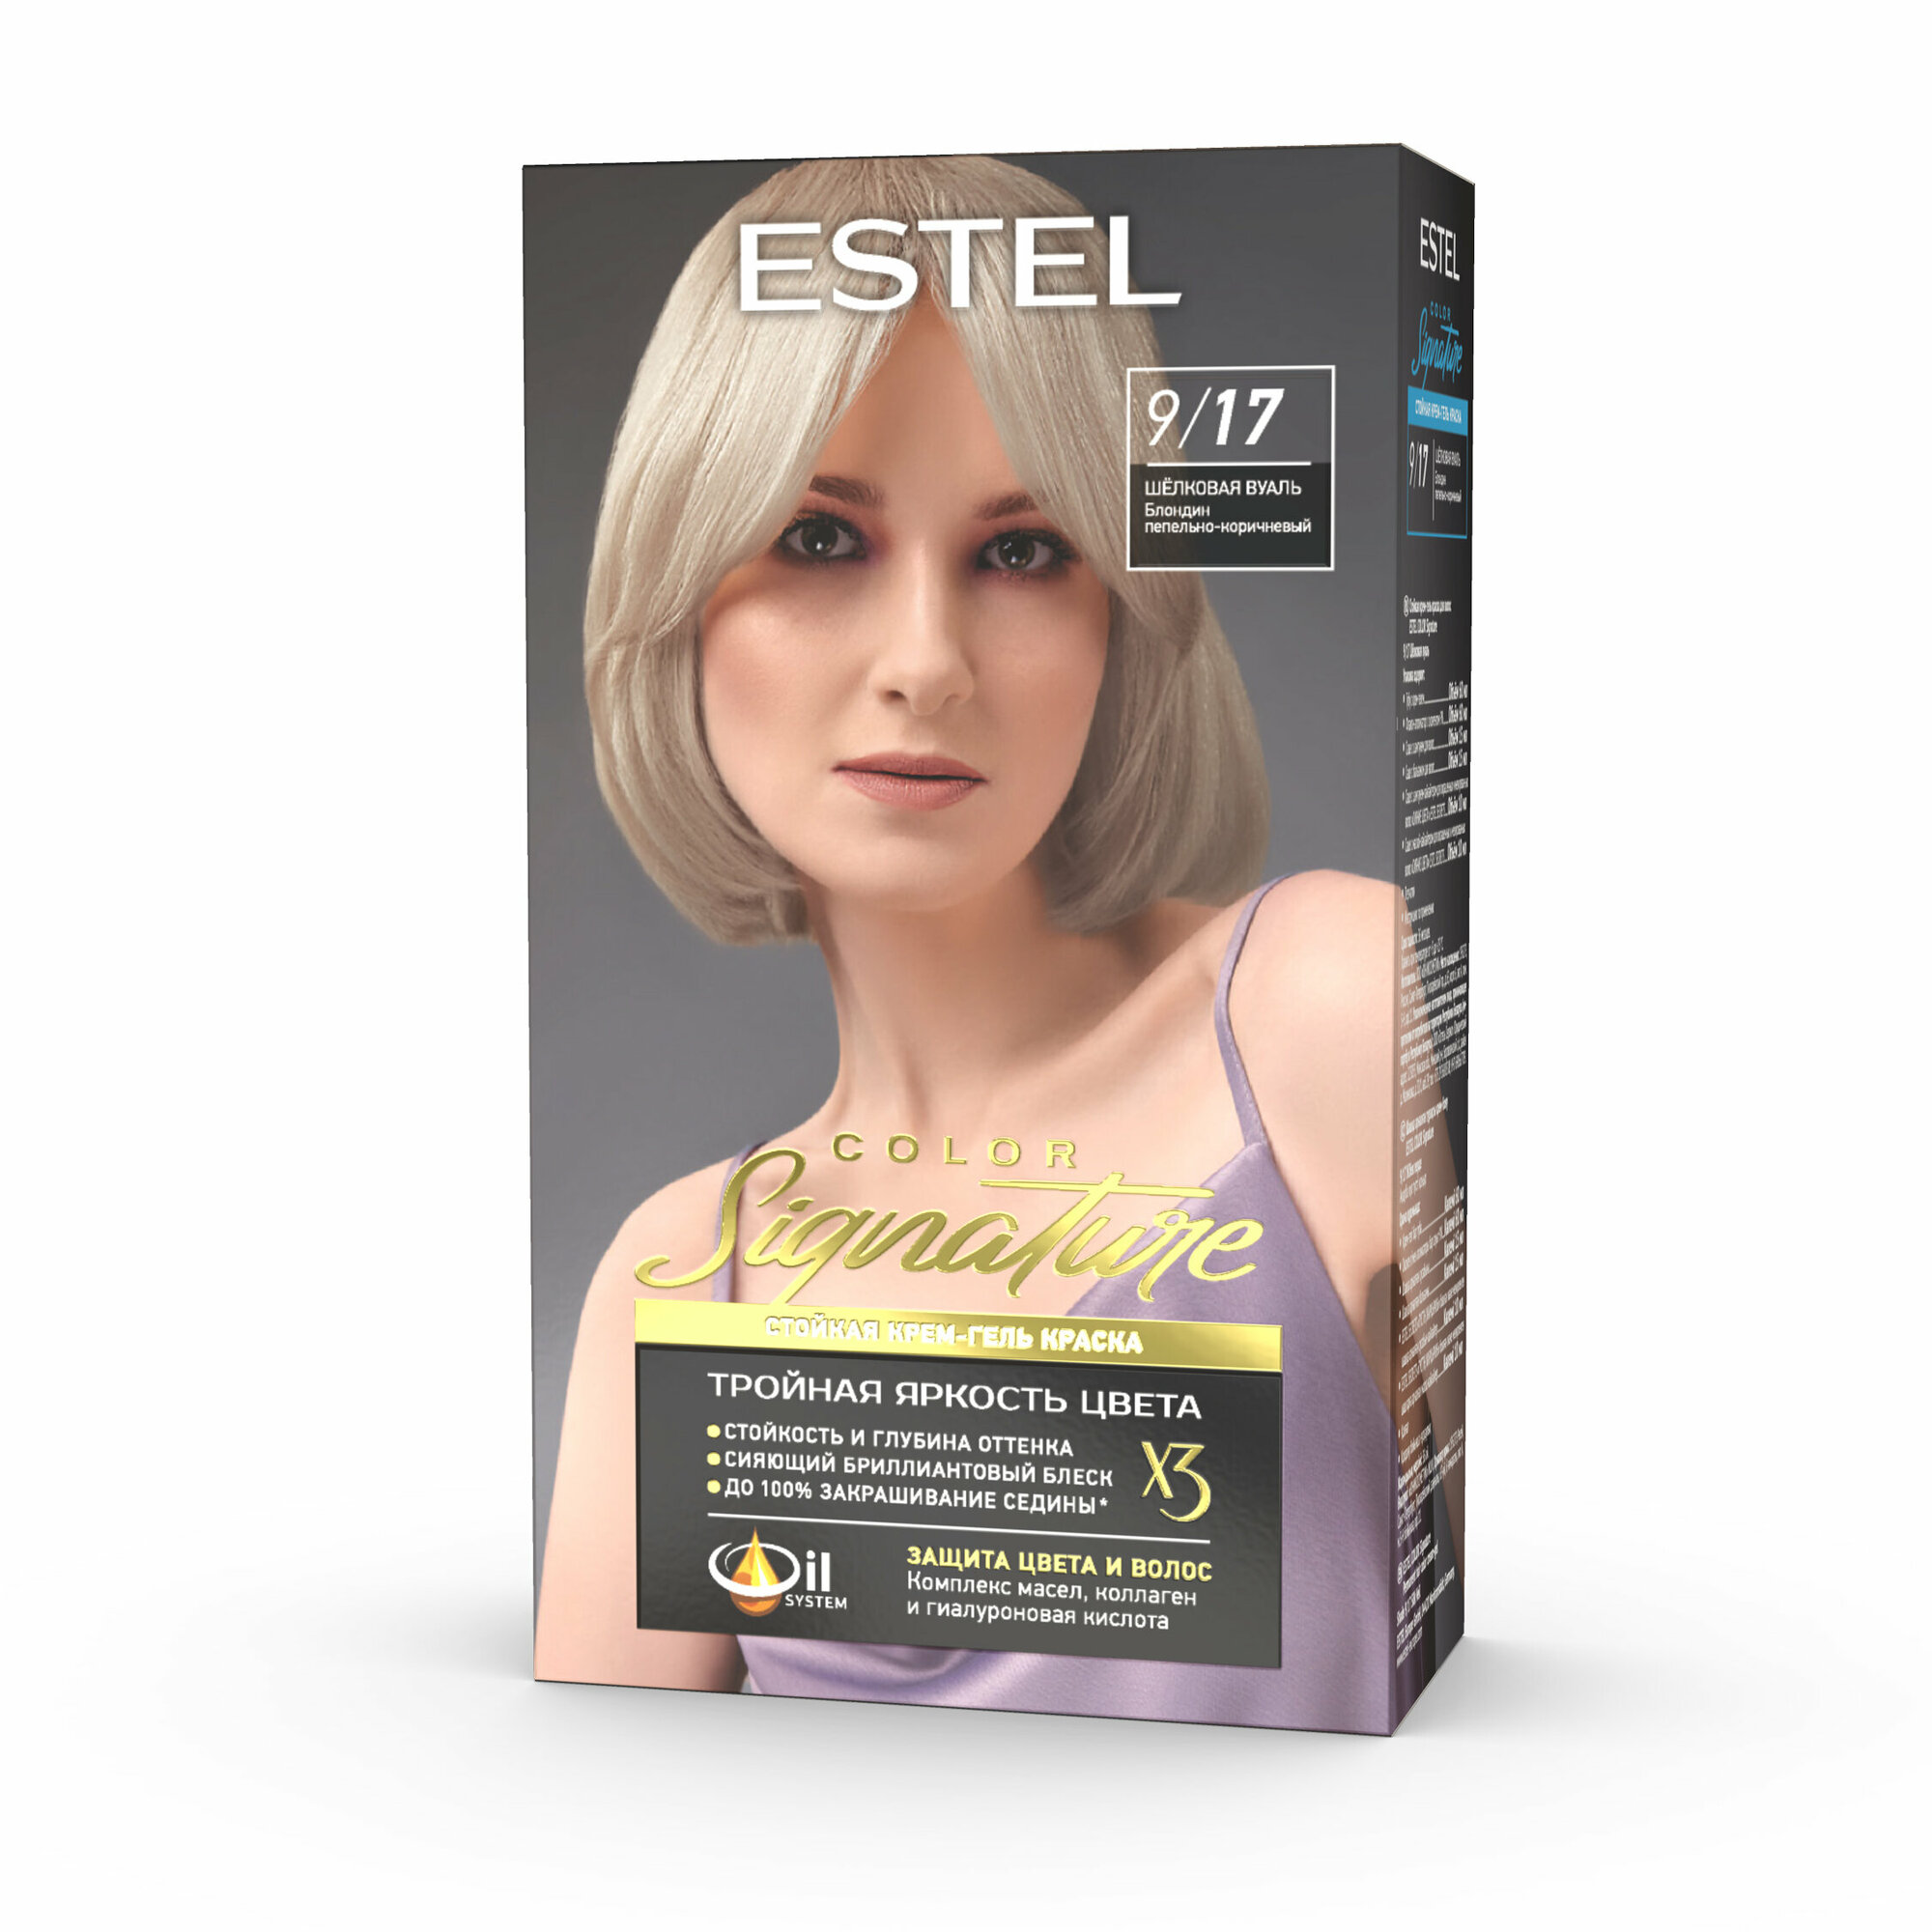 Крем-гель краска Estel color signature стойкая для волос 9/17 шёлковая вуаль